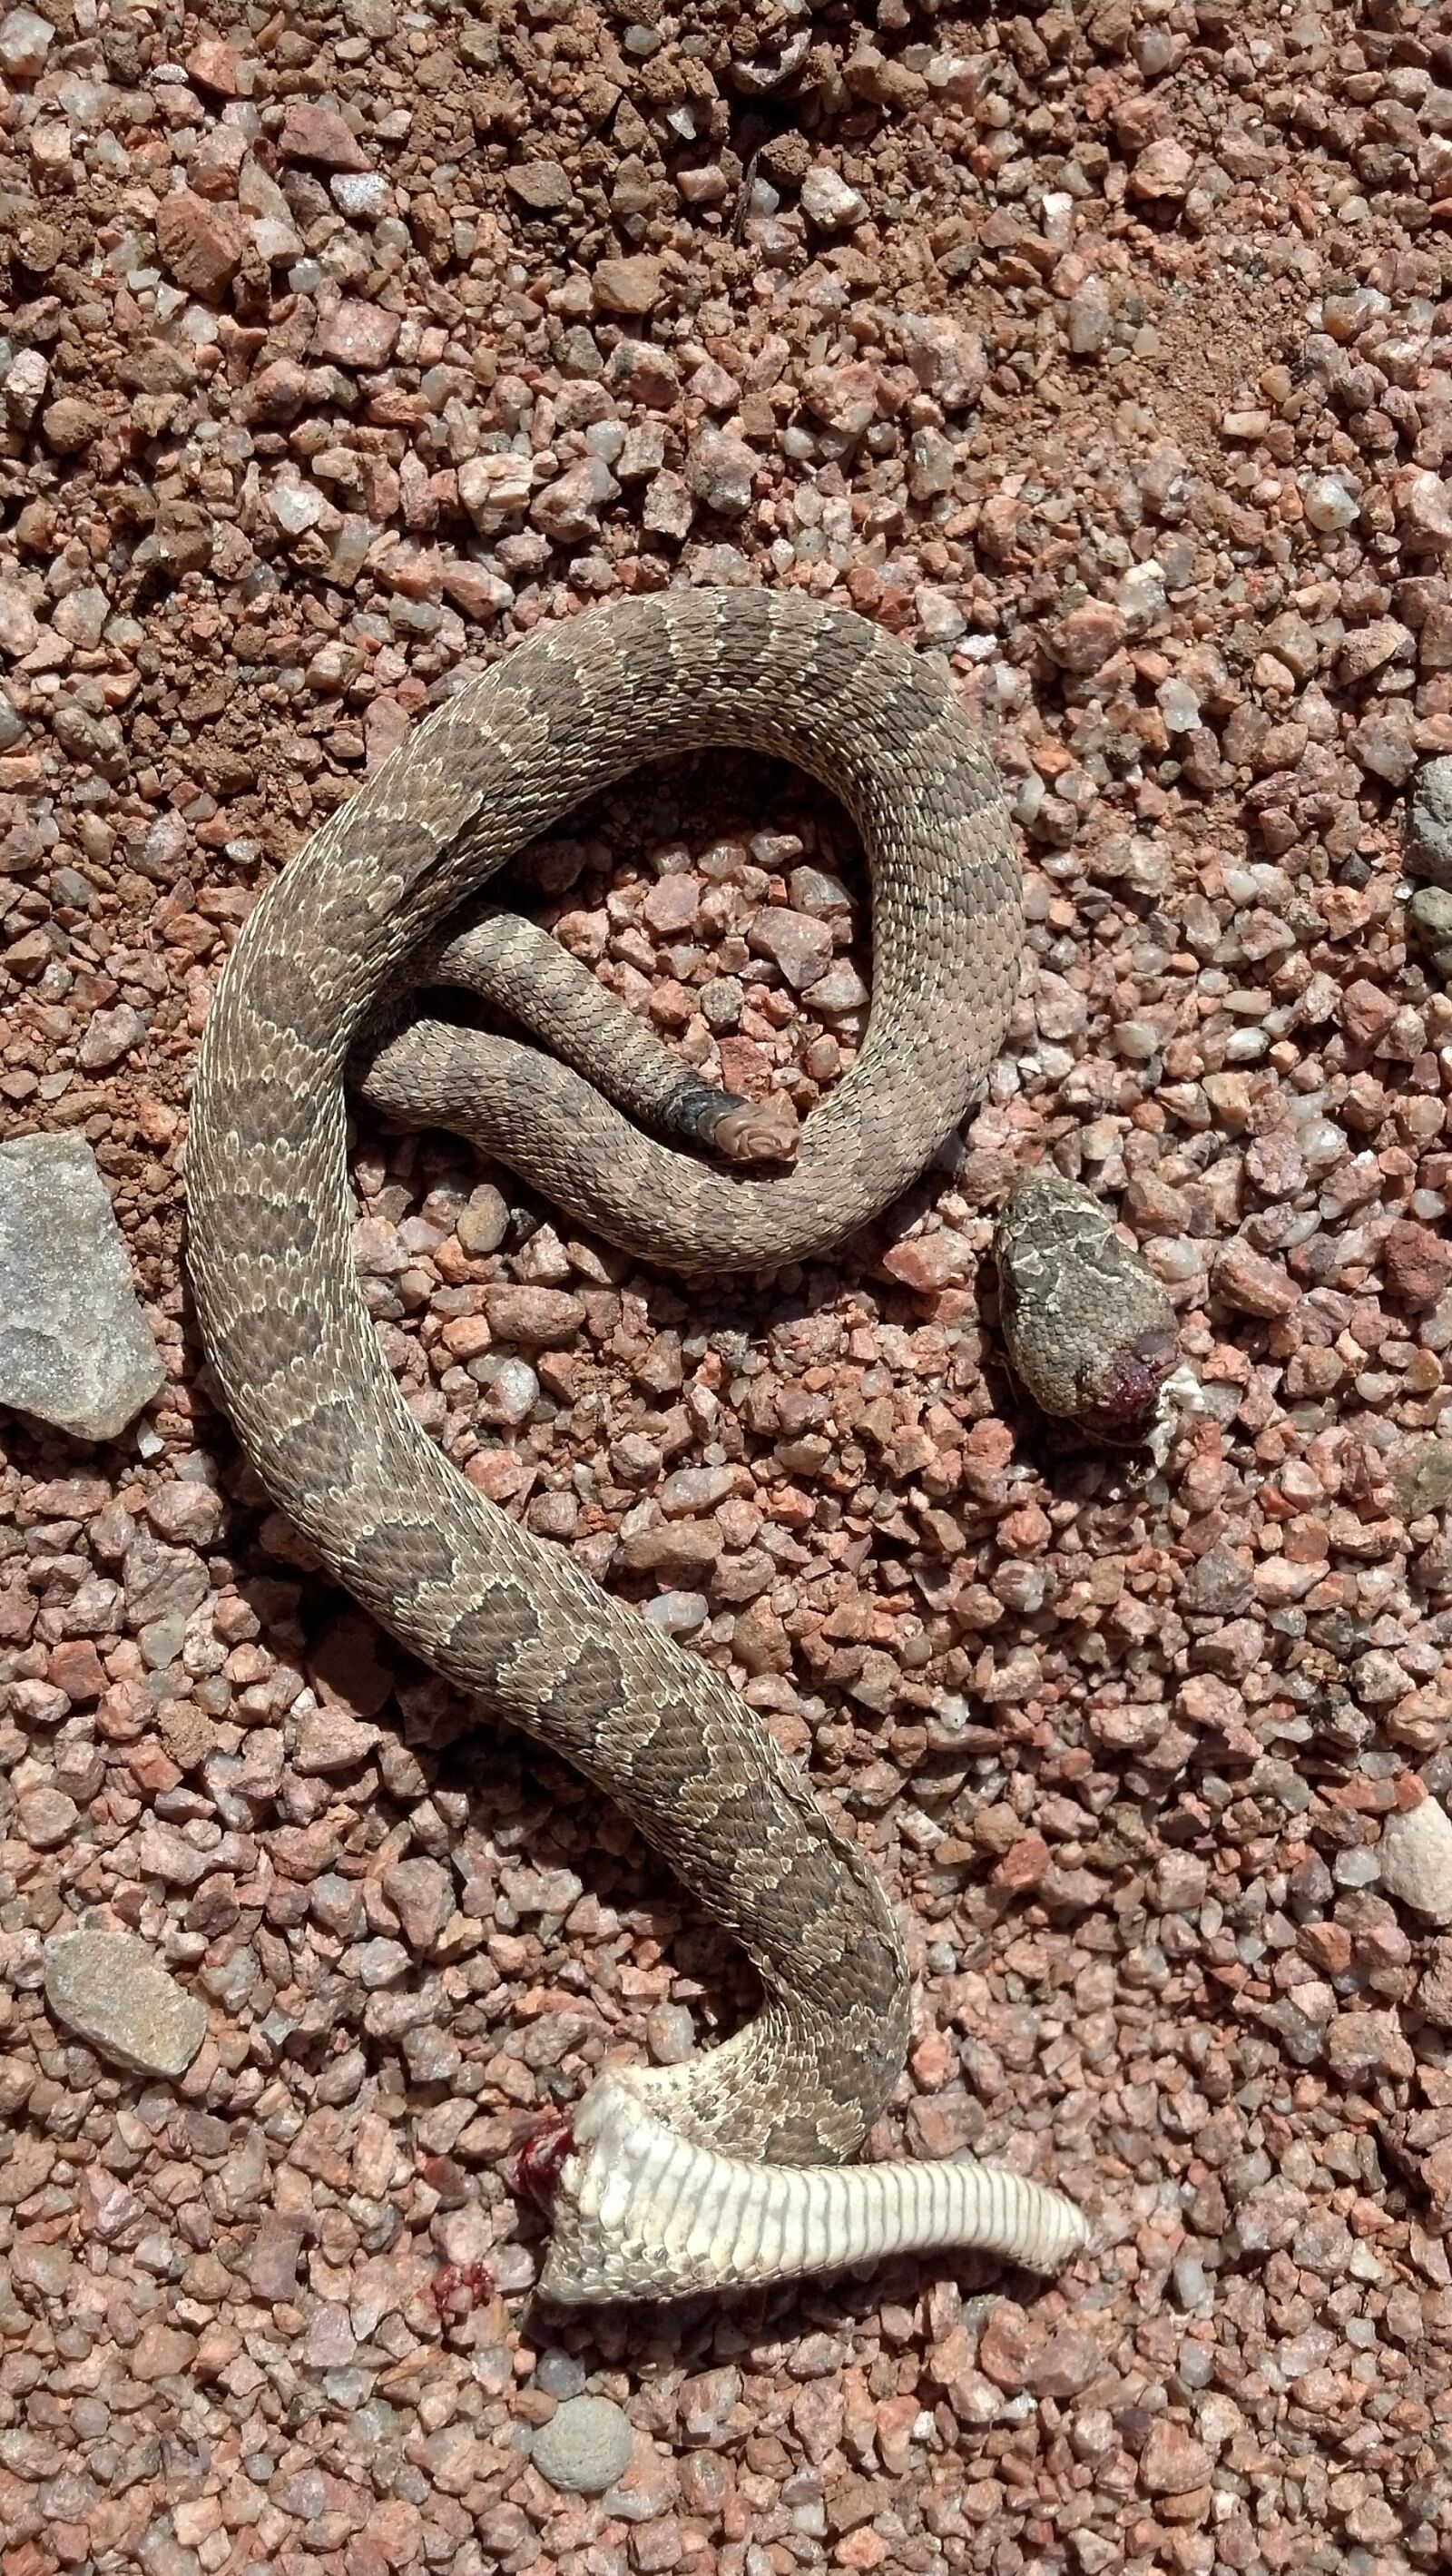 Motorola DROID RAZR sample photo. Rattlesnake, dead, desert photography